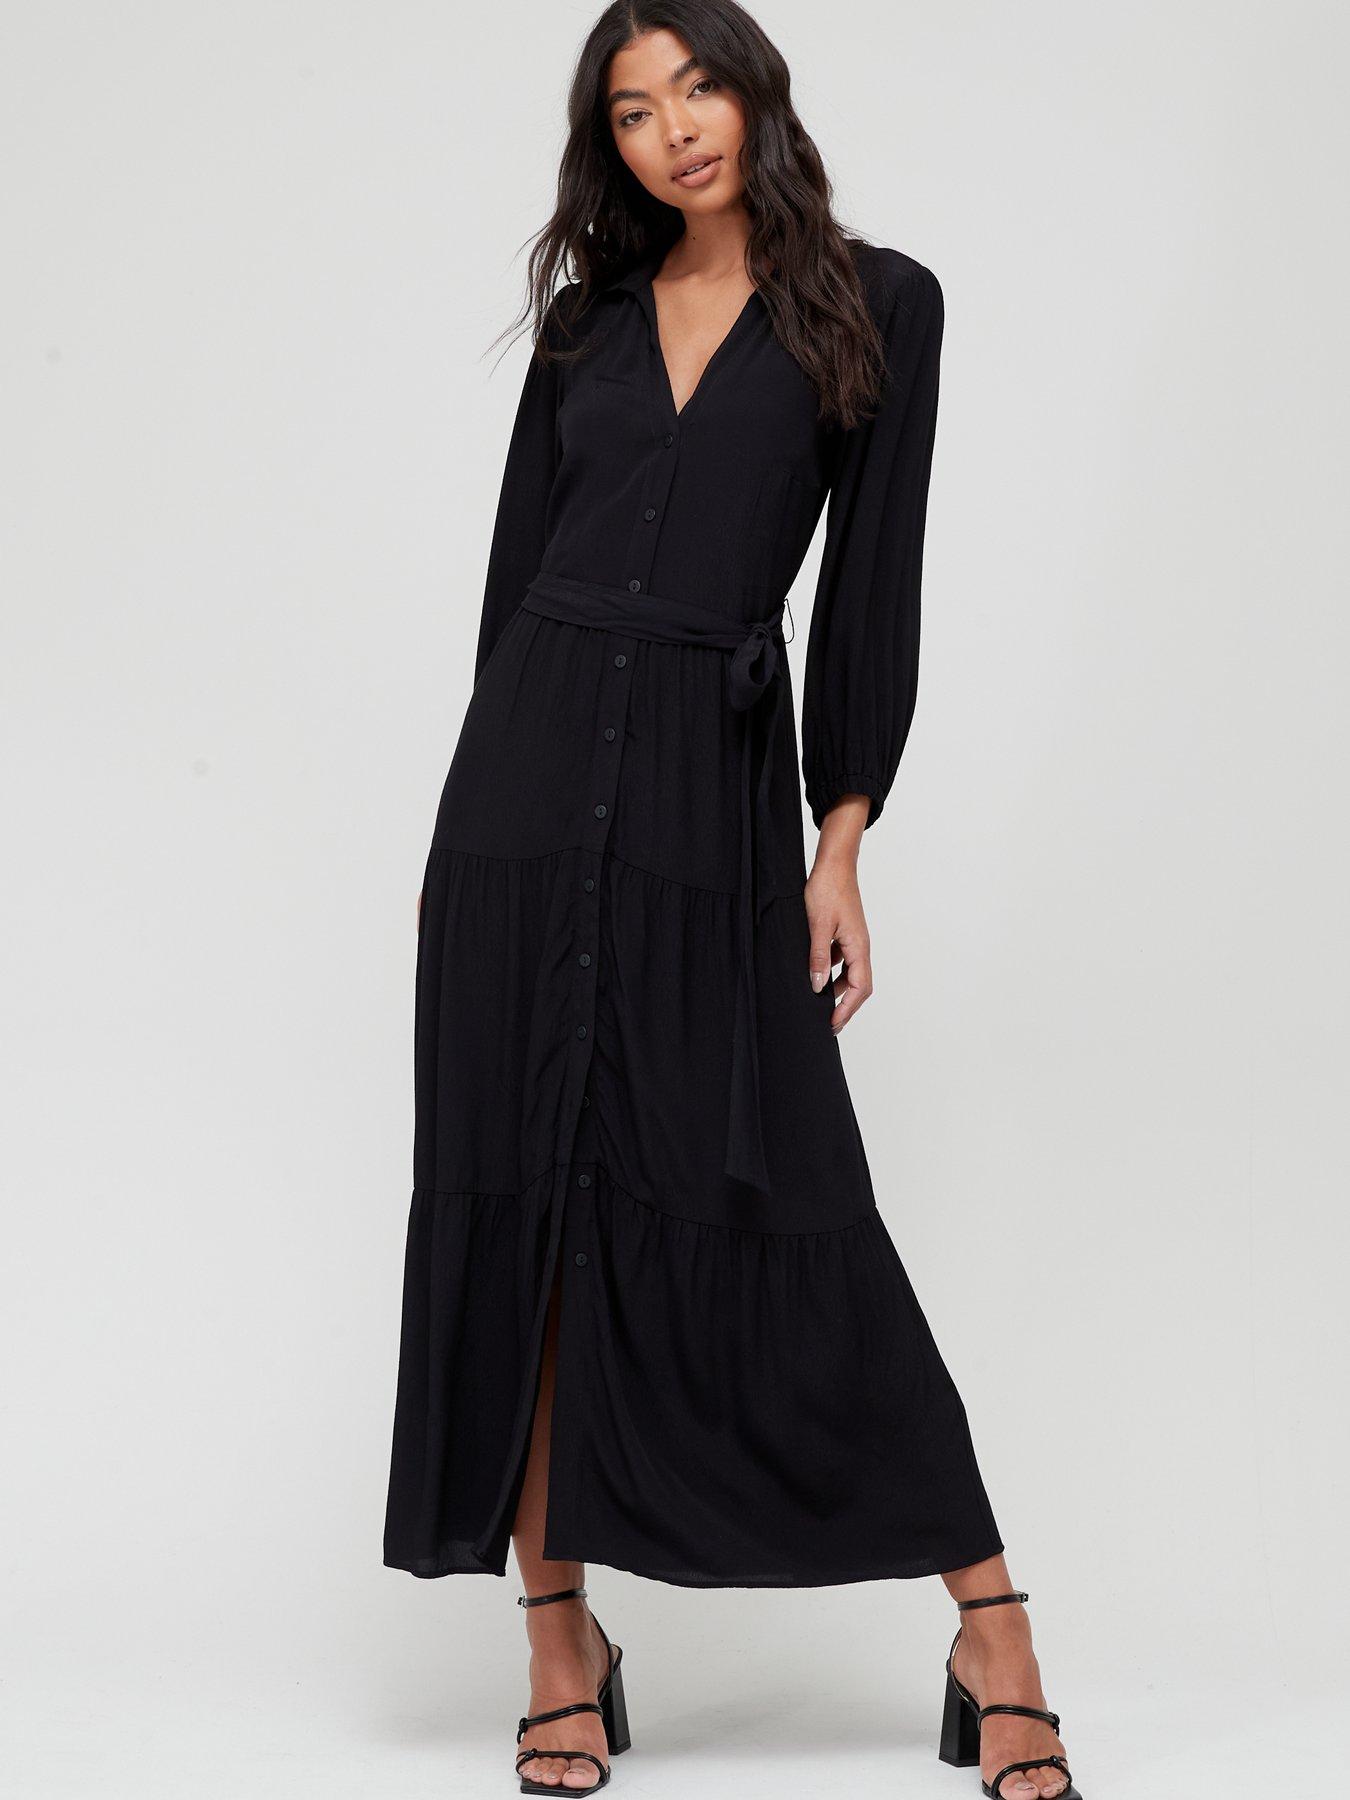 Black Dresses | Buy Little Black Dresses Online | Very.co.uk